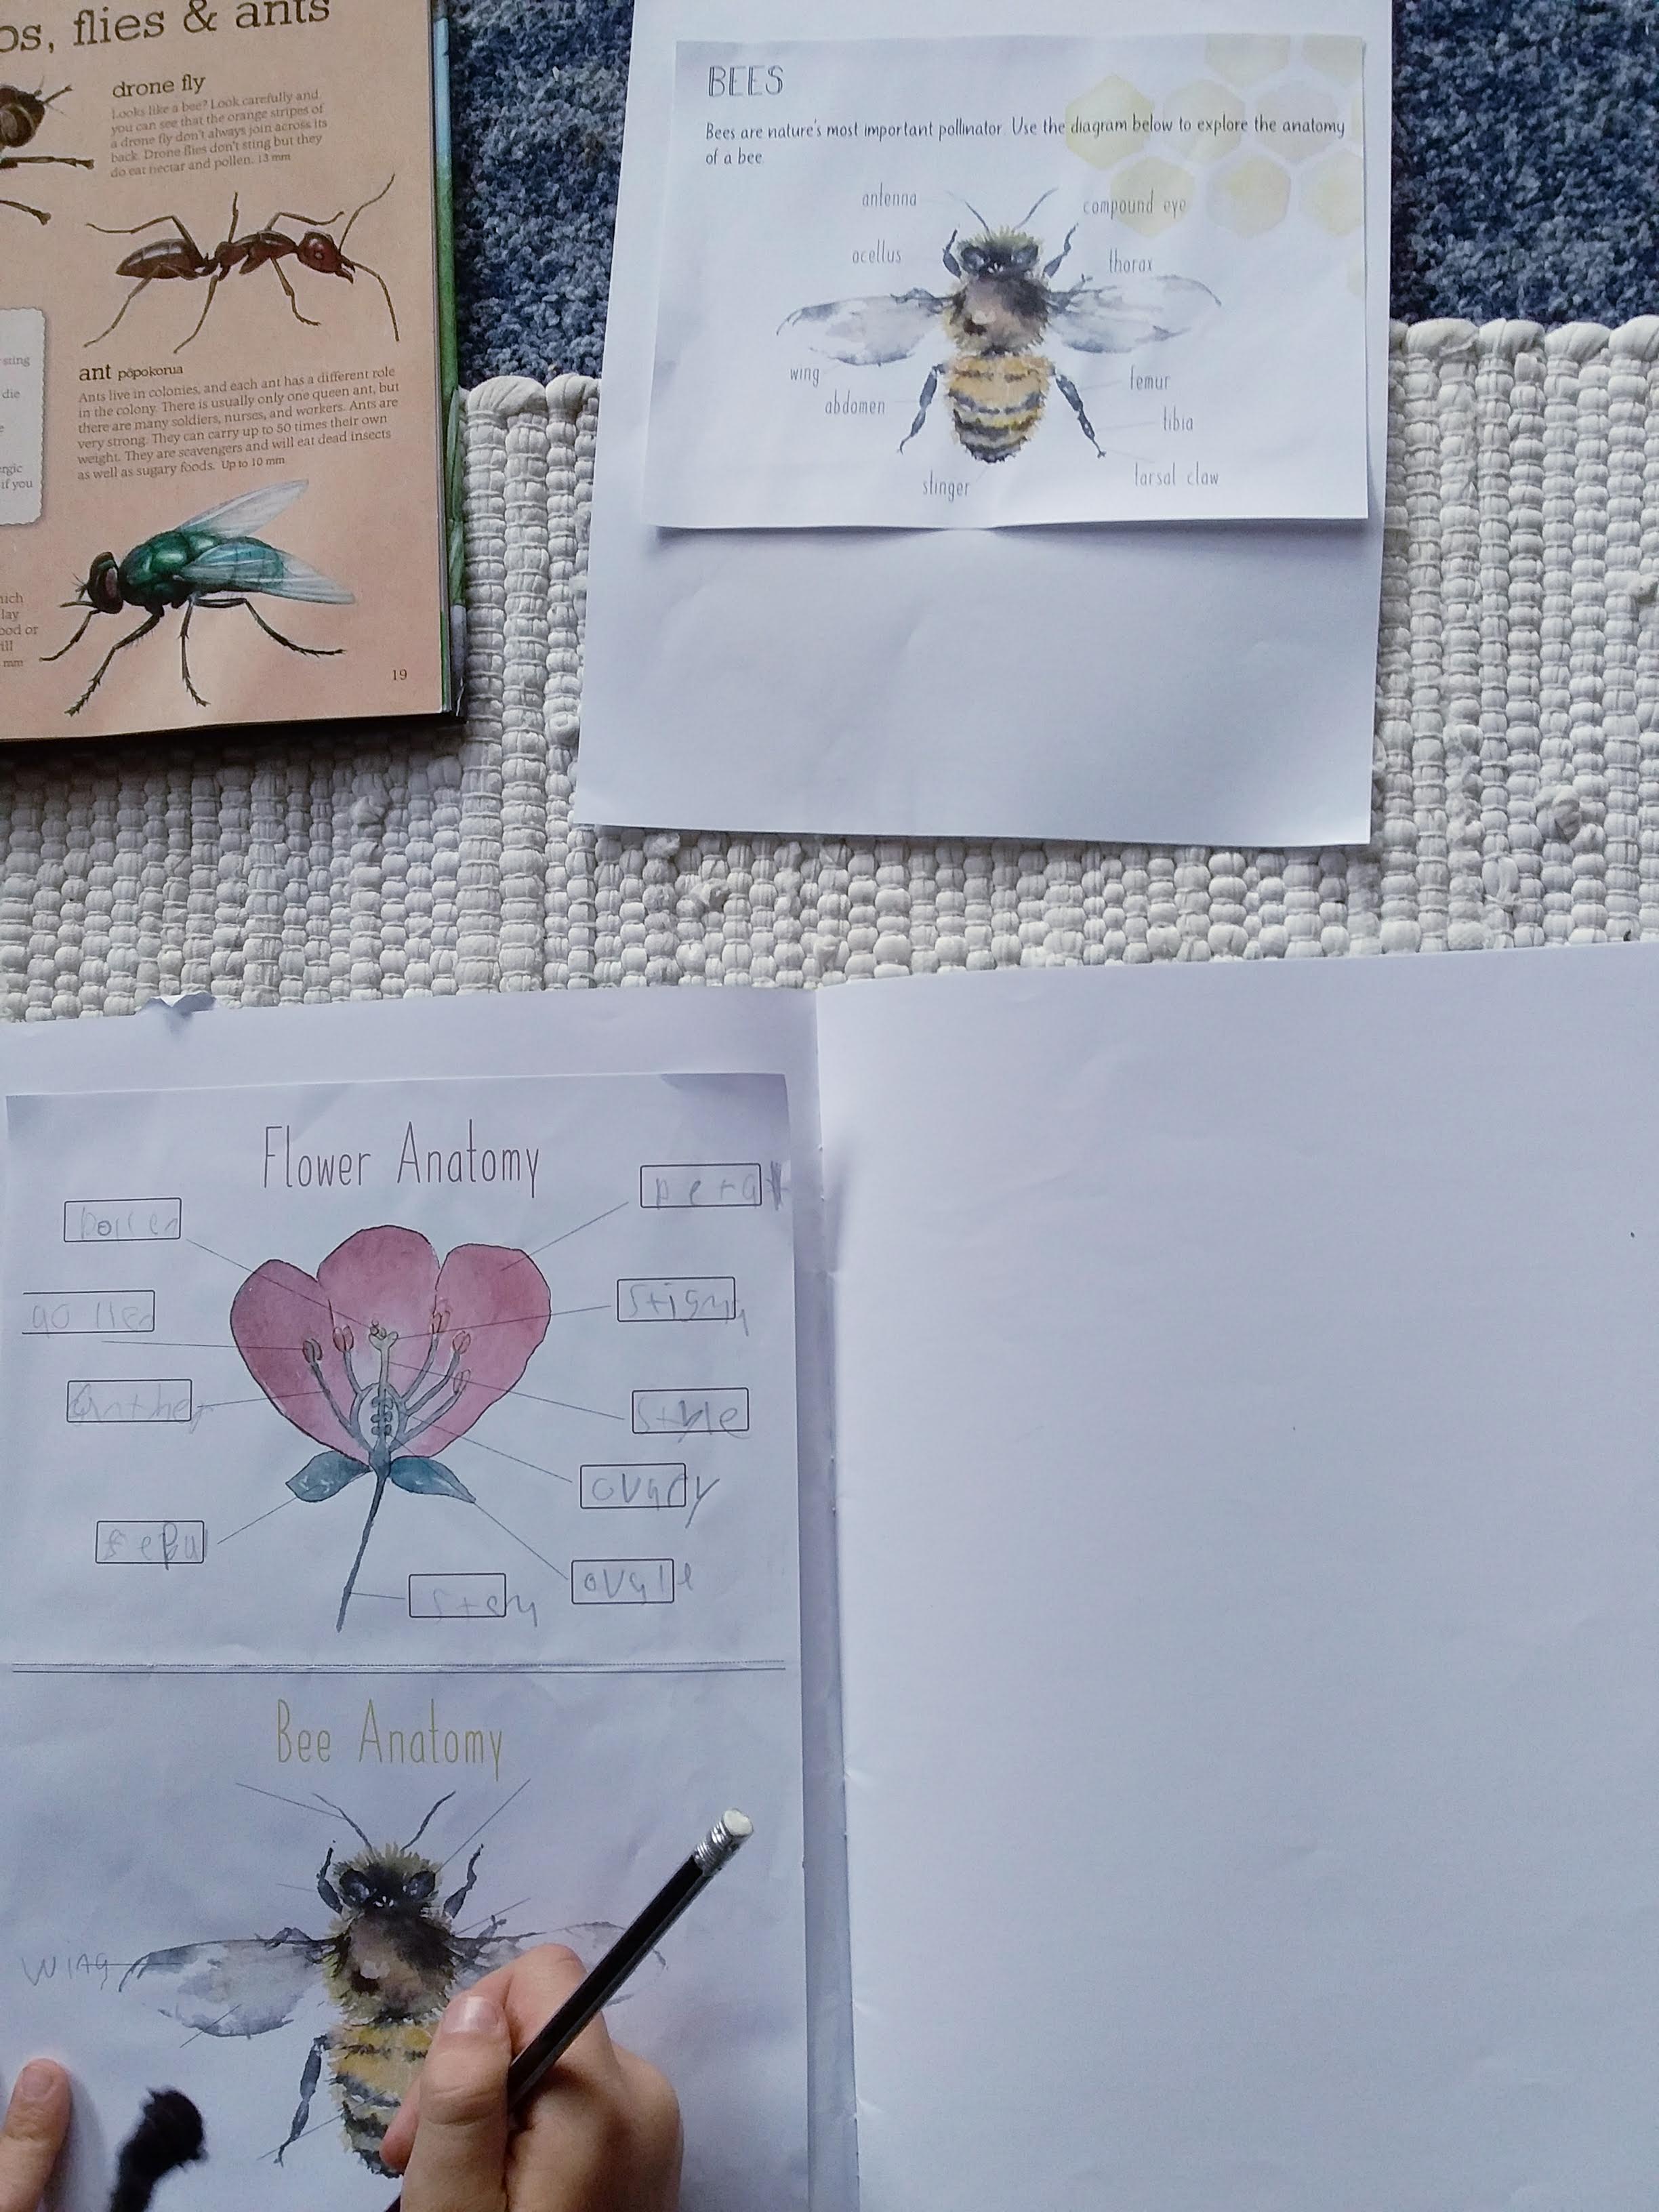 bee pollination diagram